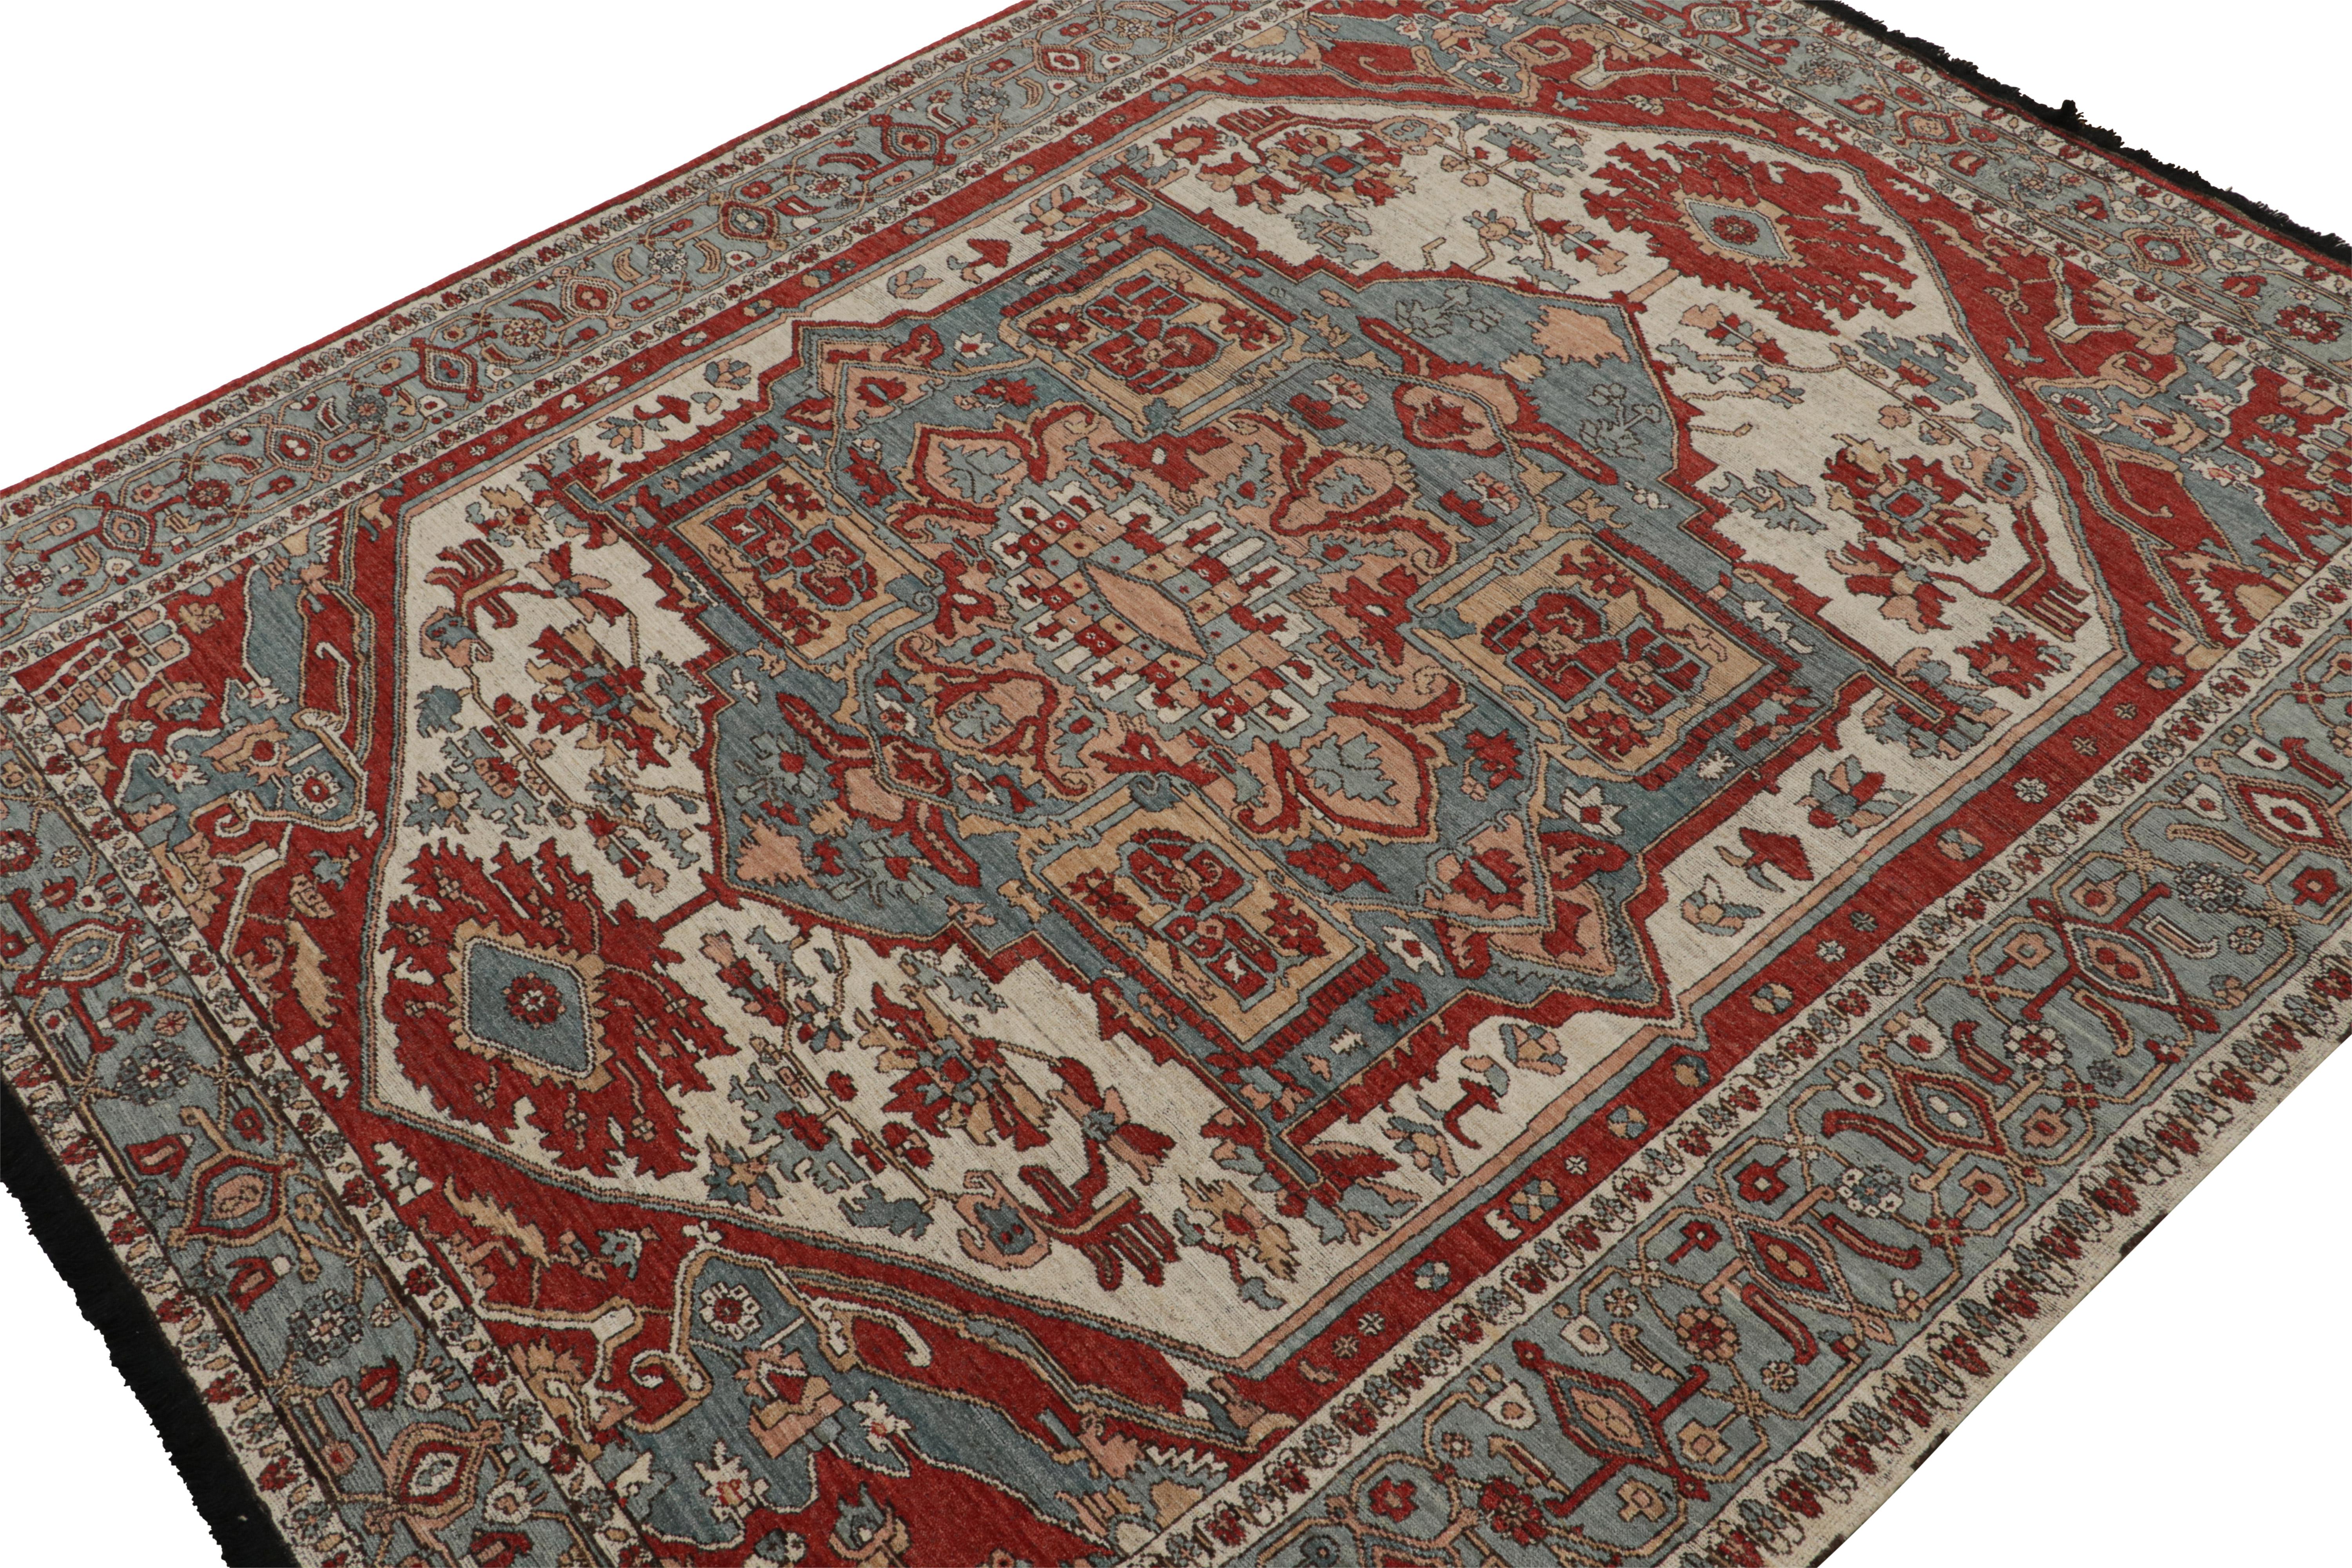 Ce tapis 10x12 est une nouvelle entrée grandiose dans la collection Burano de Rug & Kilim. Noué à la main en laine.

Plus loin dans le Design : 

Ce tapis s'inspire de tapis persans anciens de provenance Heriz-Serapi. Il comporte une intéressante